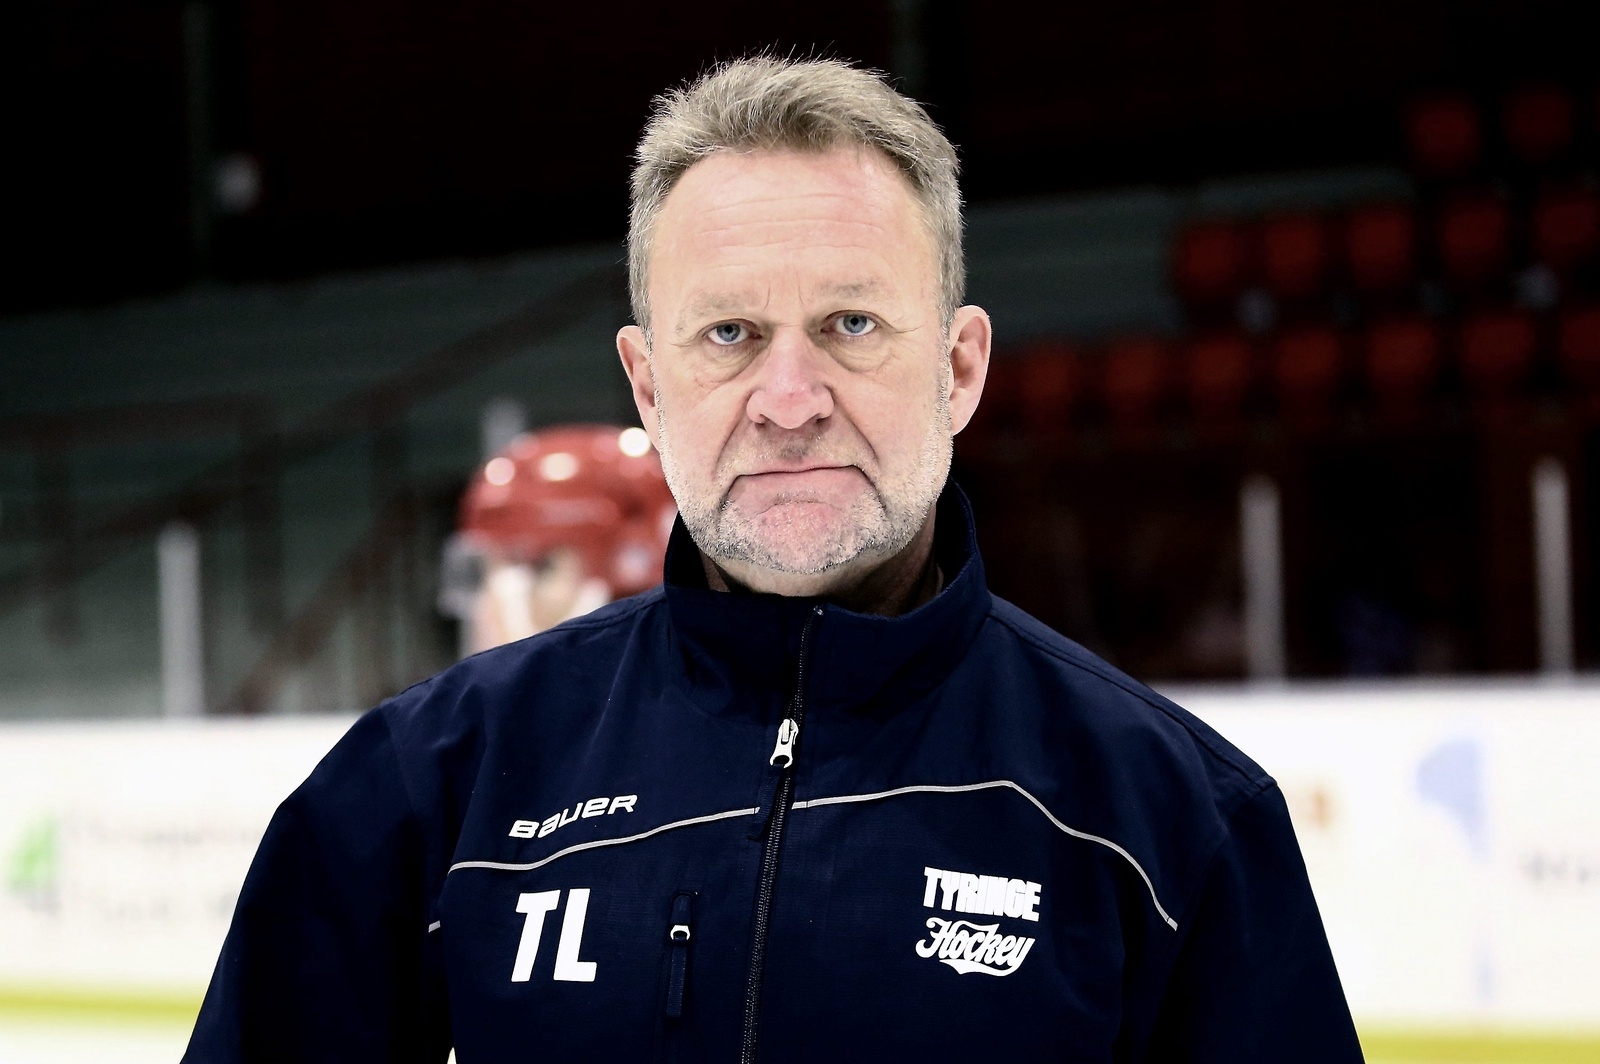 Tommy Landgren anser sig ha följt direktiven.
Foto: Stefan Sandström